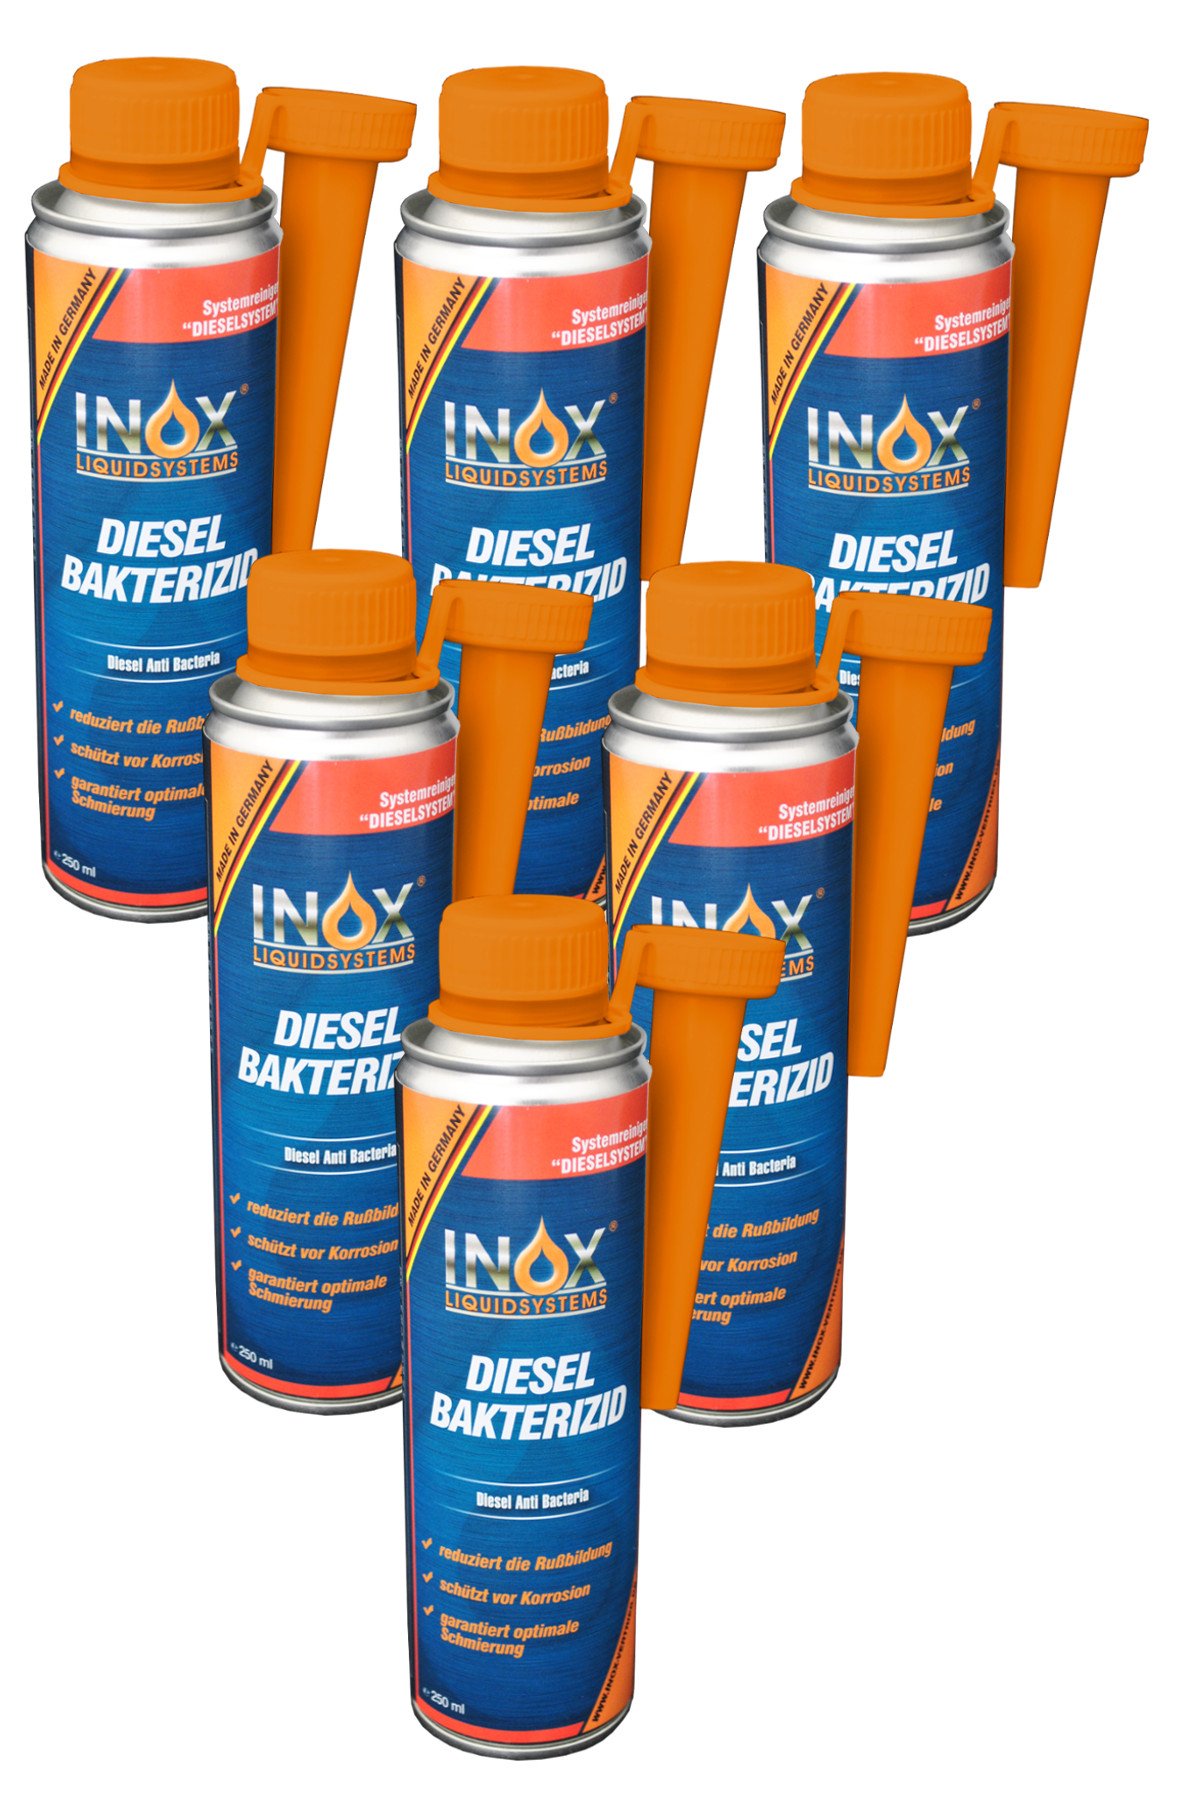 INOX® Diesel Bakterizid, 6 x 250ml - Additiv Desinfektion für Dieselsystem, Auto und Heizölsysteme von INOX-LIQUIDSYSTEMS